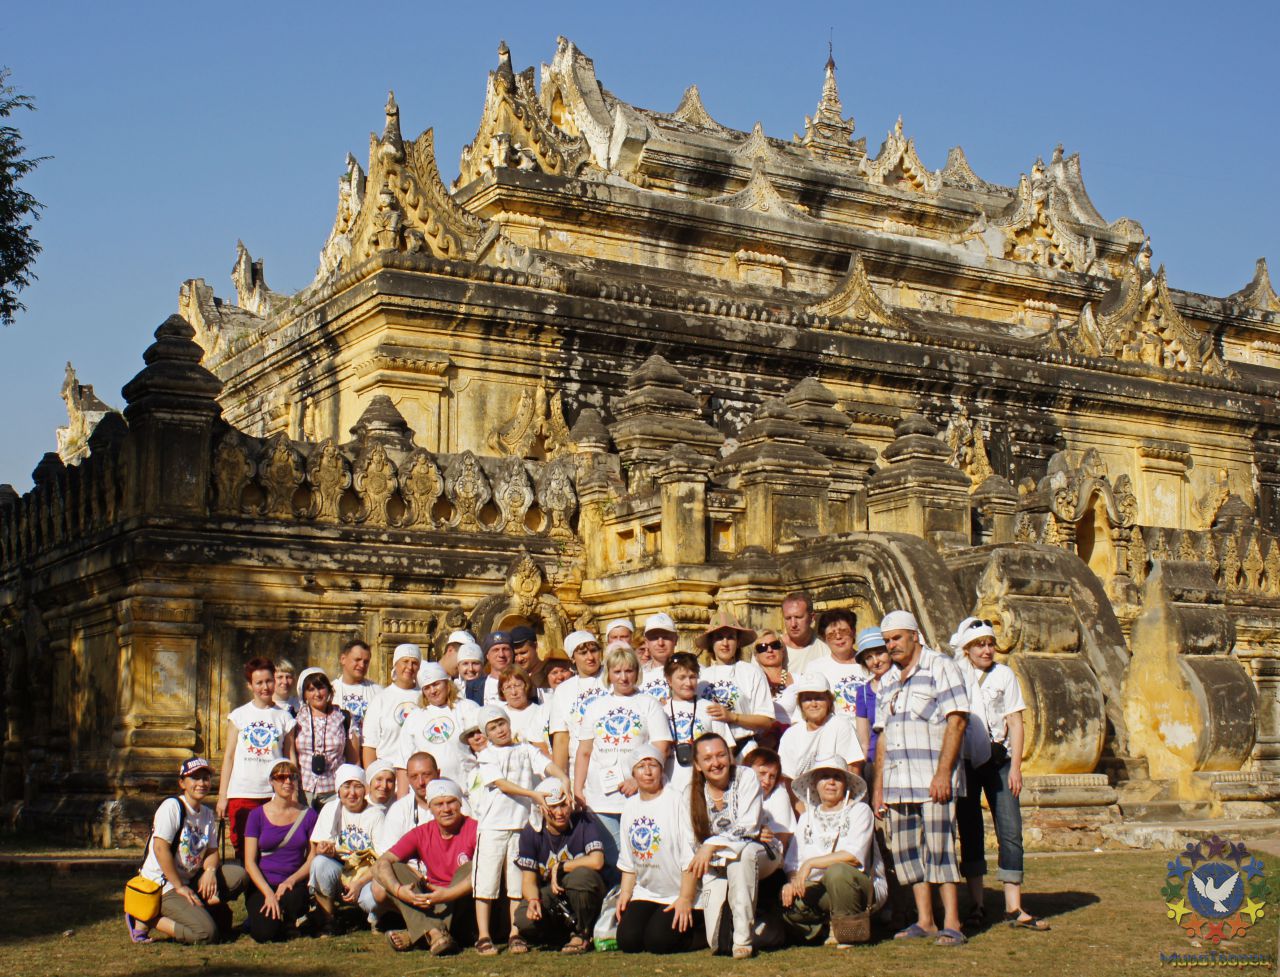 Монастырь Maha Aungmye Bonzan был построен в начале 19 века. Монастырь имеет несколько ярусов, соединенных множеством каменных лестниц, можно зайти внутрь любого яруса. - МЬЯНМА, февраль 2011